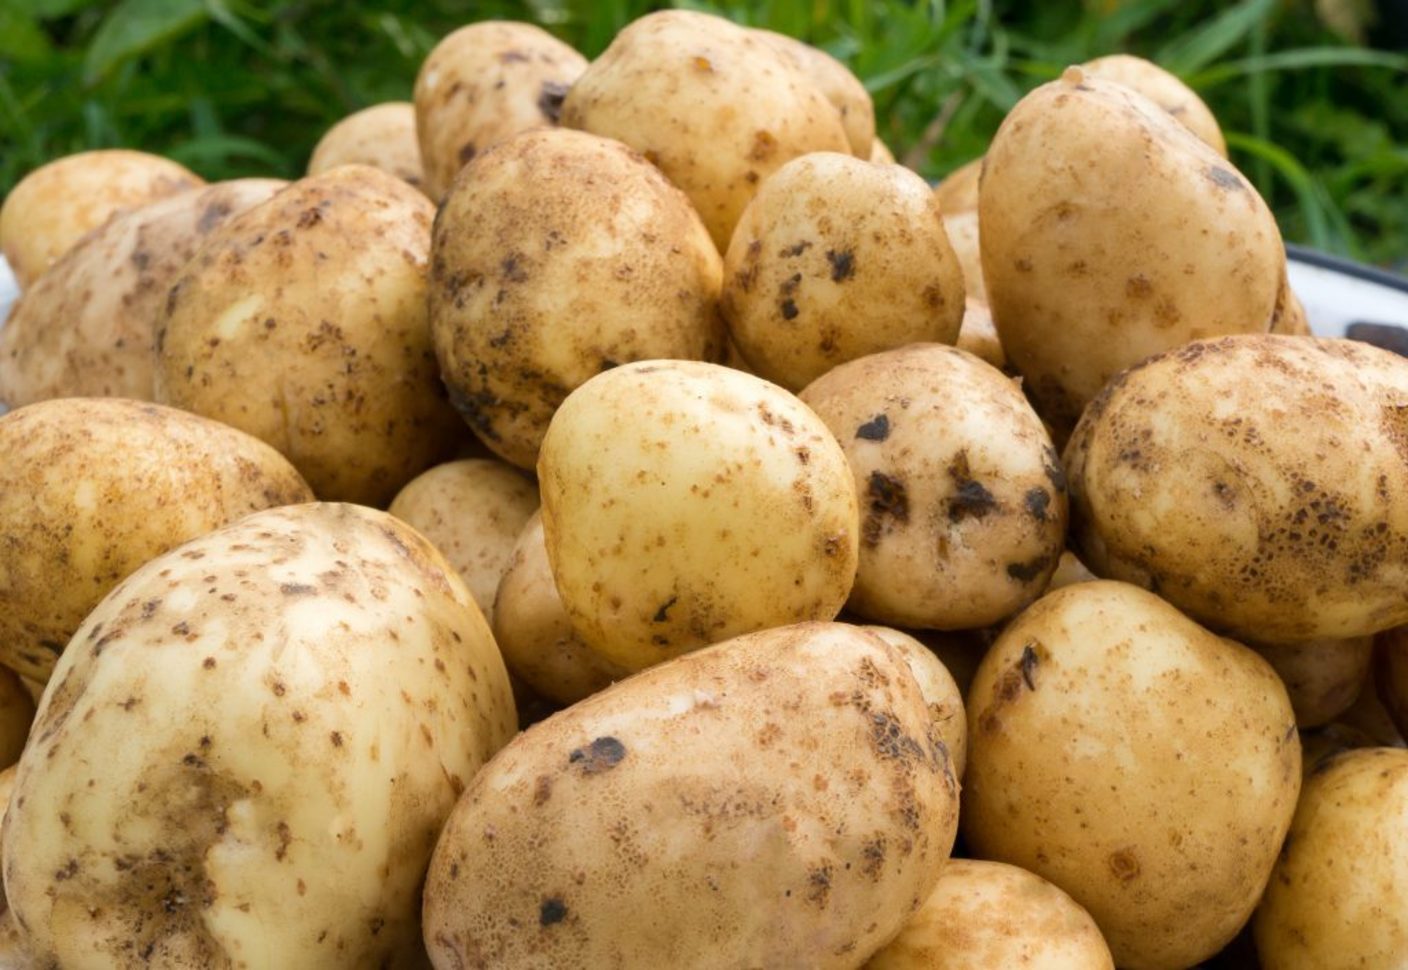 сорт картофеля коломбо характеристика